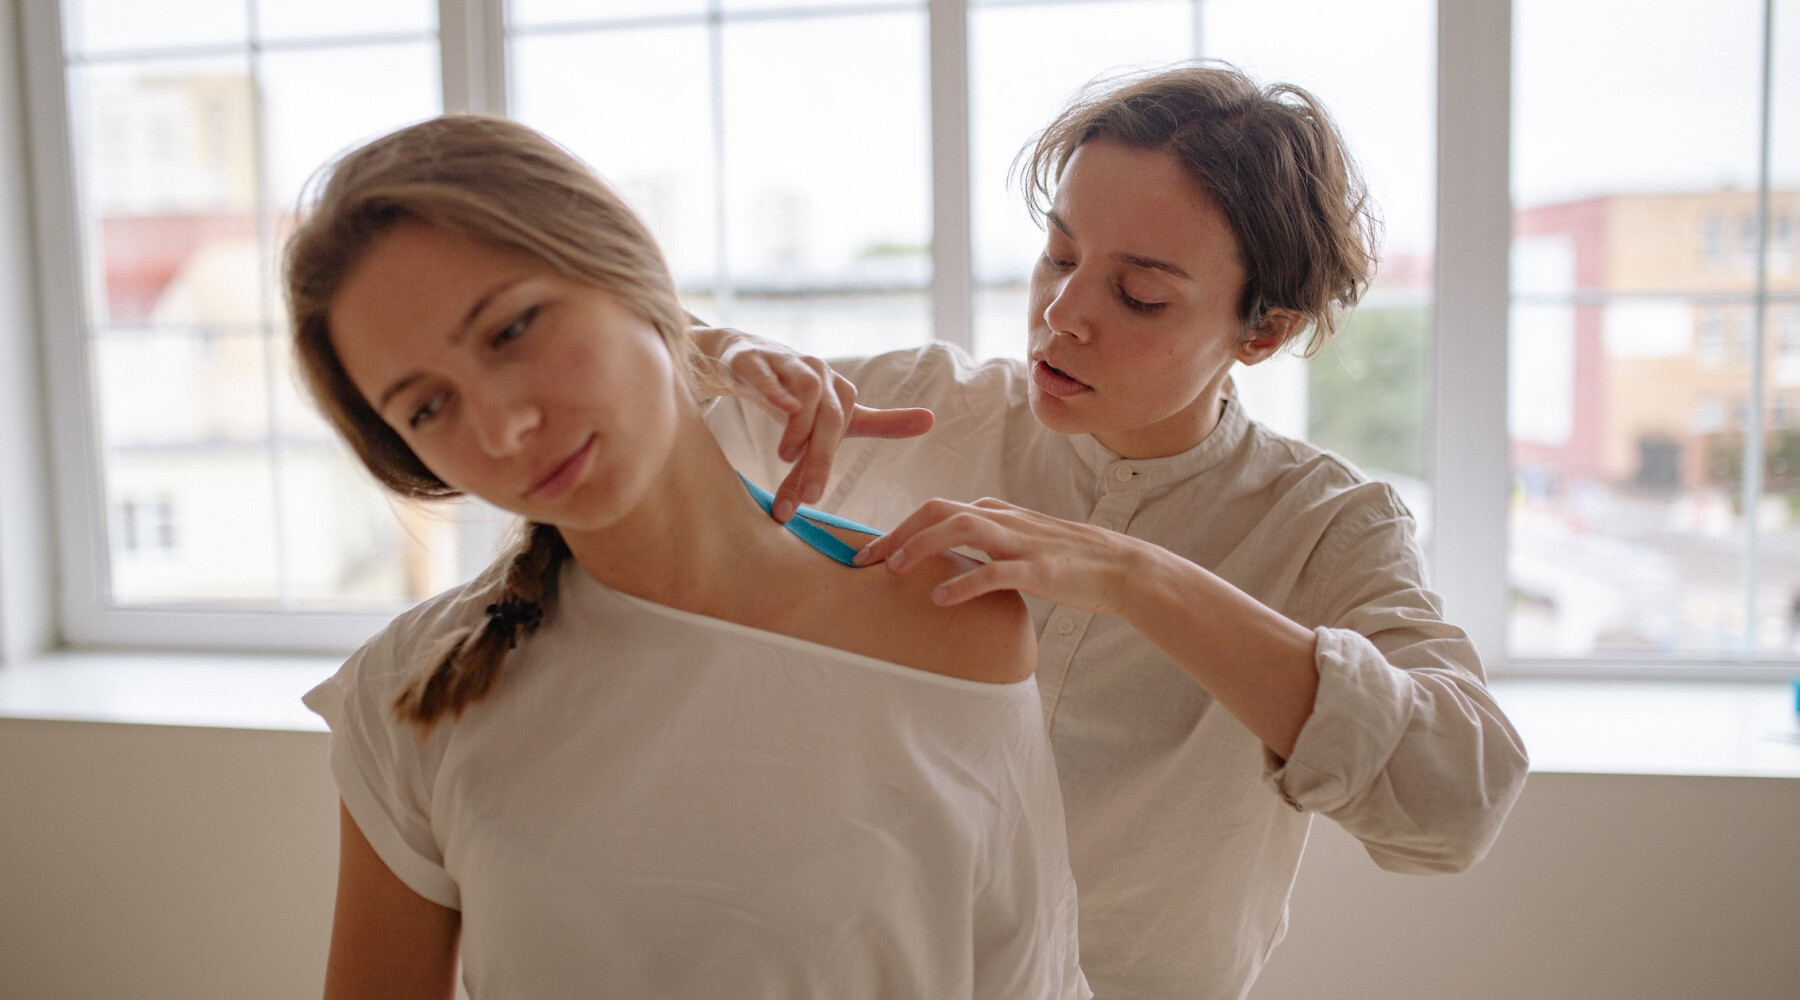 A woman applies bandage to a woman's neck.